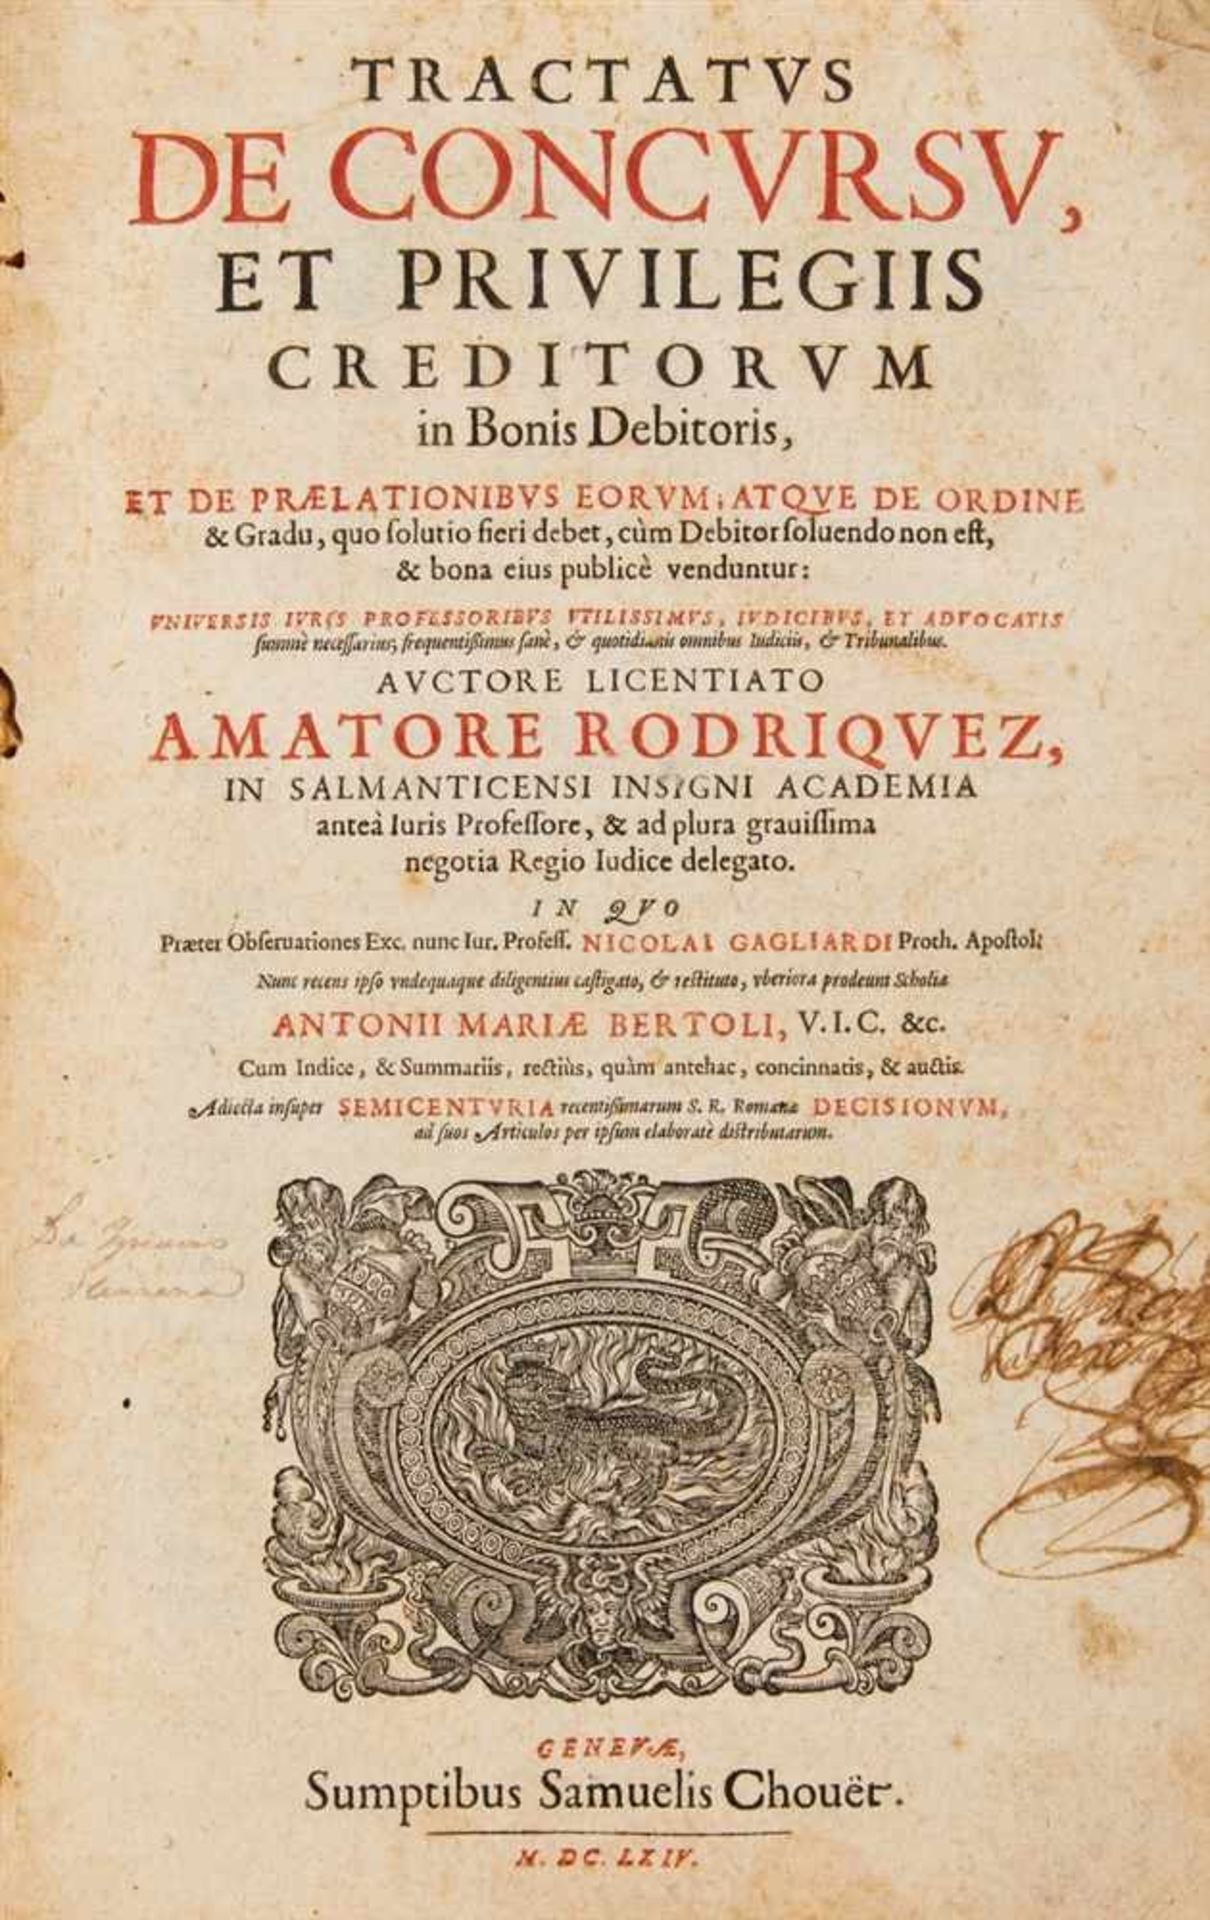 Rodríguez, Amador: Tractatus de concursu et privilegiis creditorum in bonis debitoris. Genf: